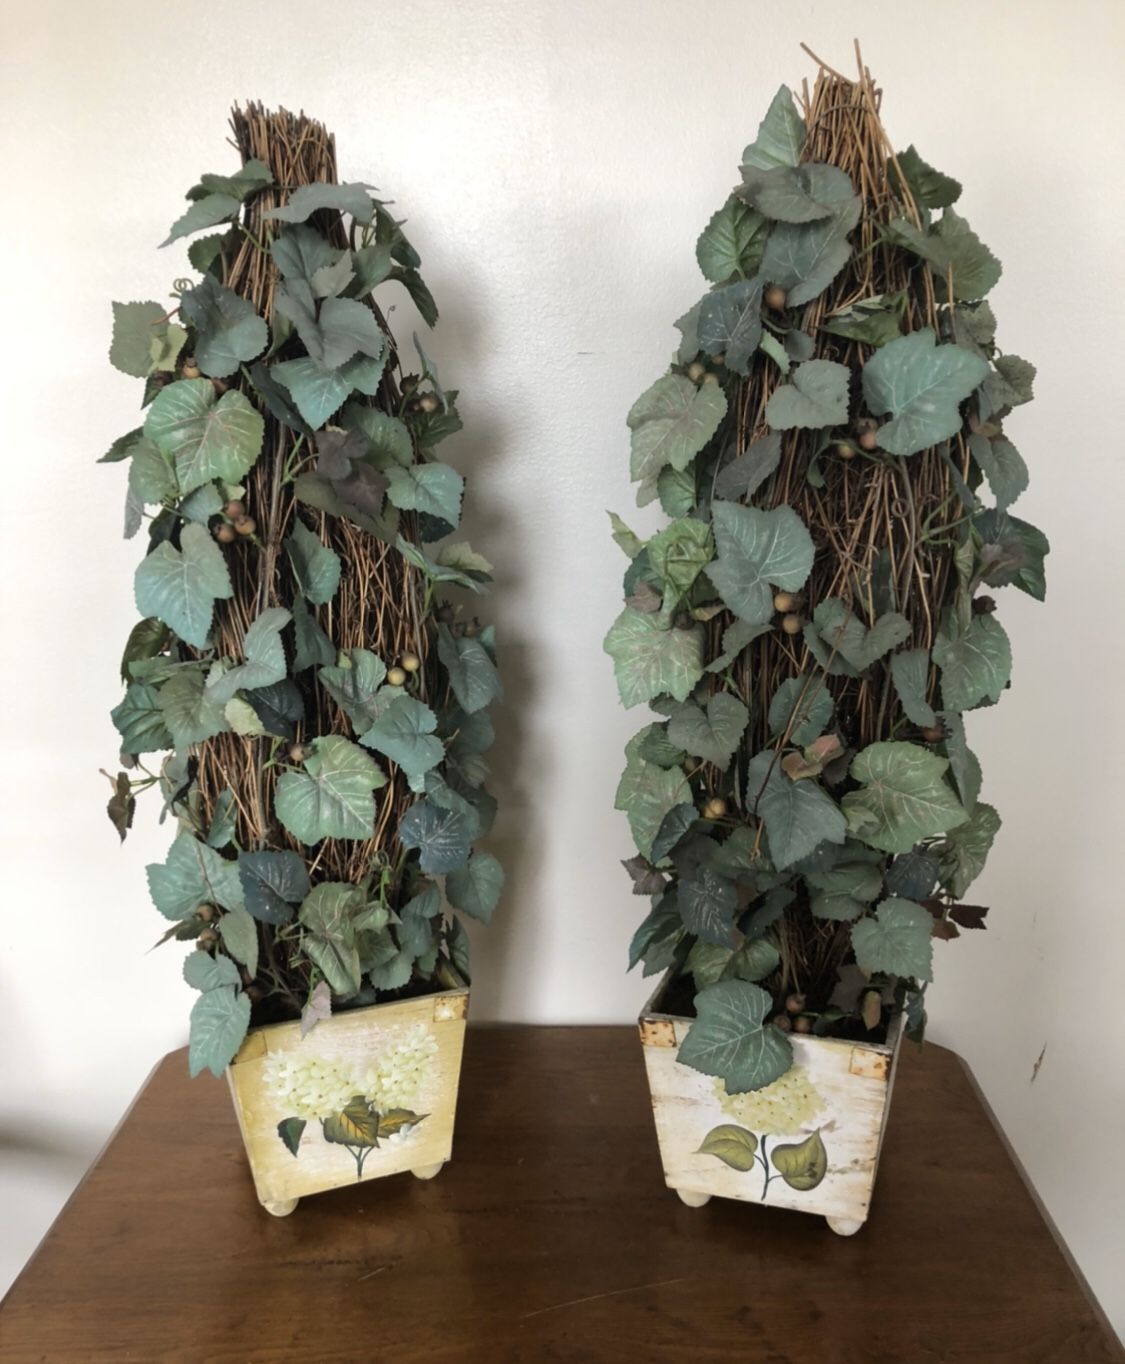 Gorgeous Ivy Topiary Grape Vine Faux Plants with Hydrangea Pots Vases $10 each!